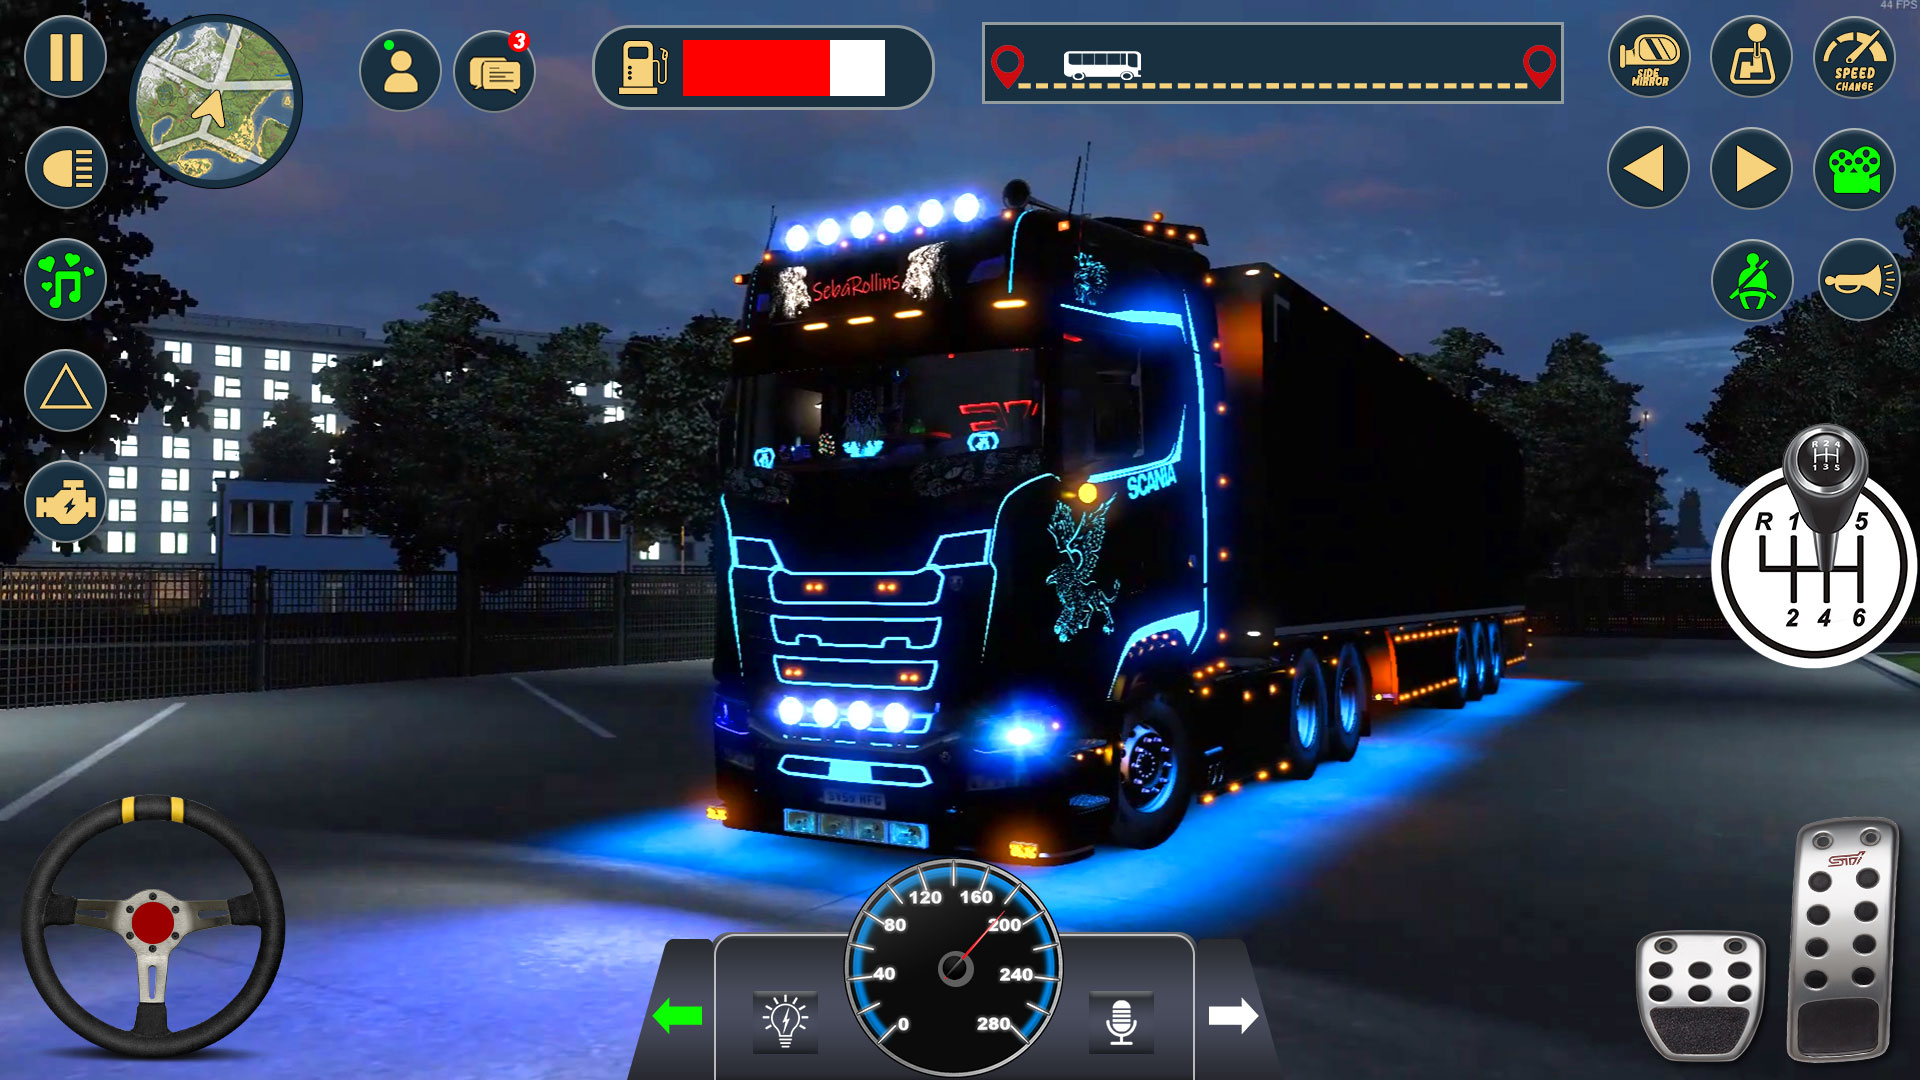 Euro Truck Simulator 2 - Download This Fun Simulator Now